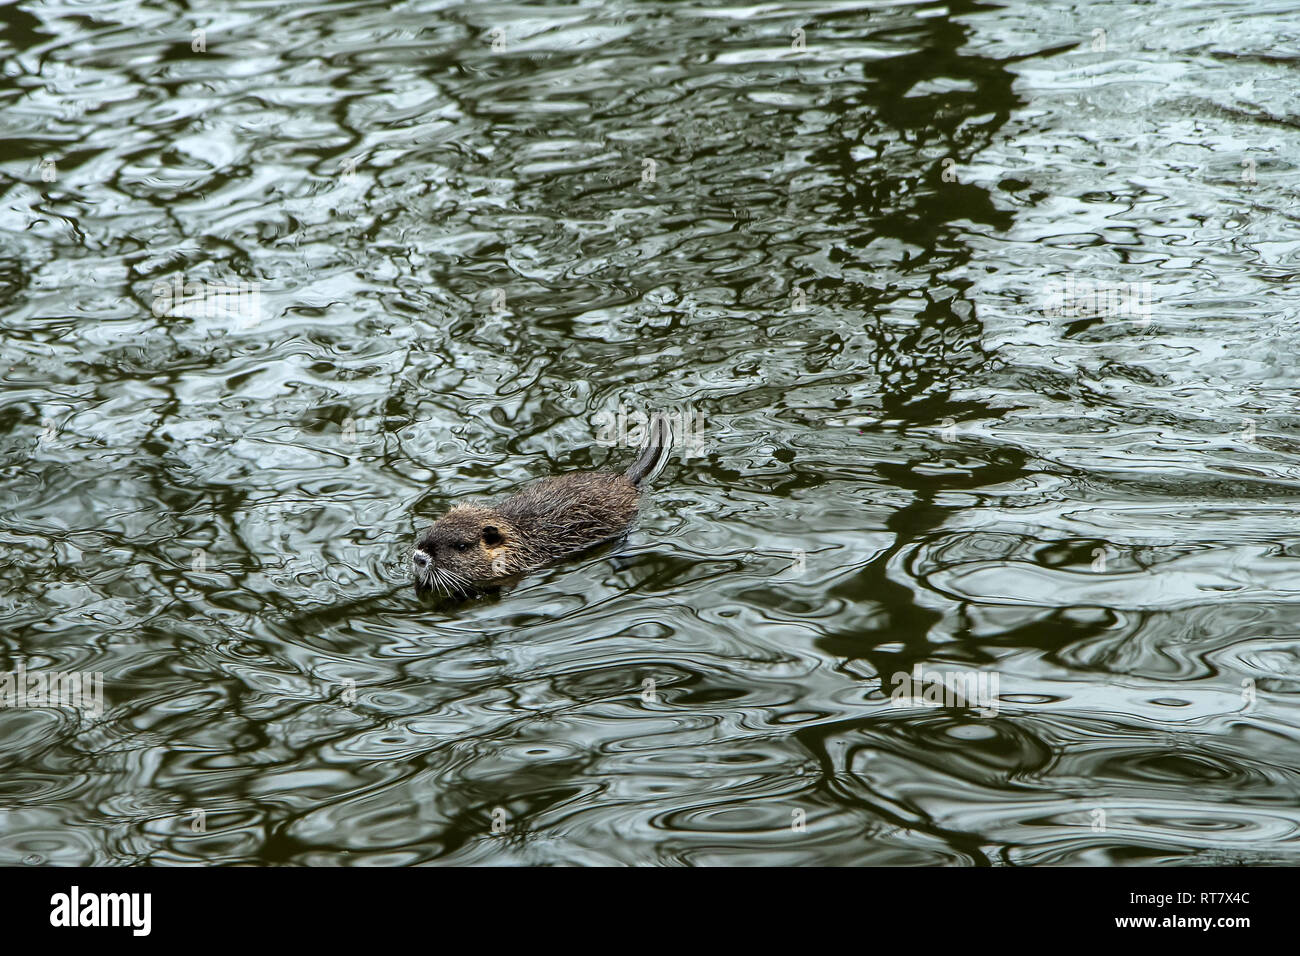 Une photo de l'coypus à Prague en République tchèque. Ils vivent dans l'eau dans la ville et ils sont un problème pour l'écosystème. Banque D'Images